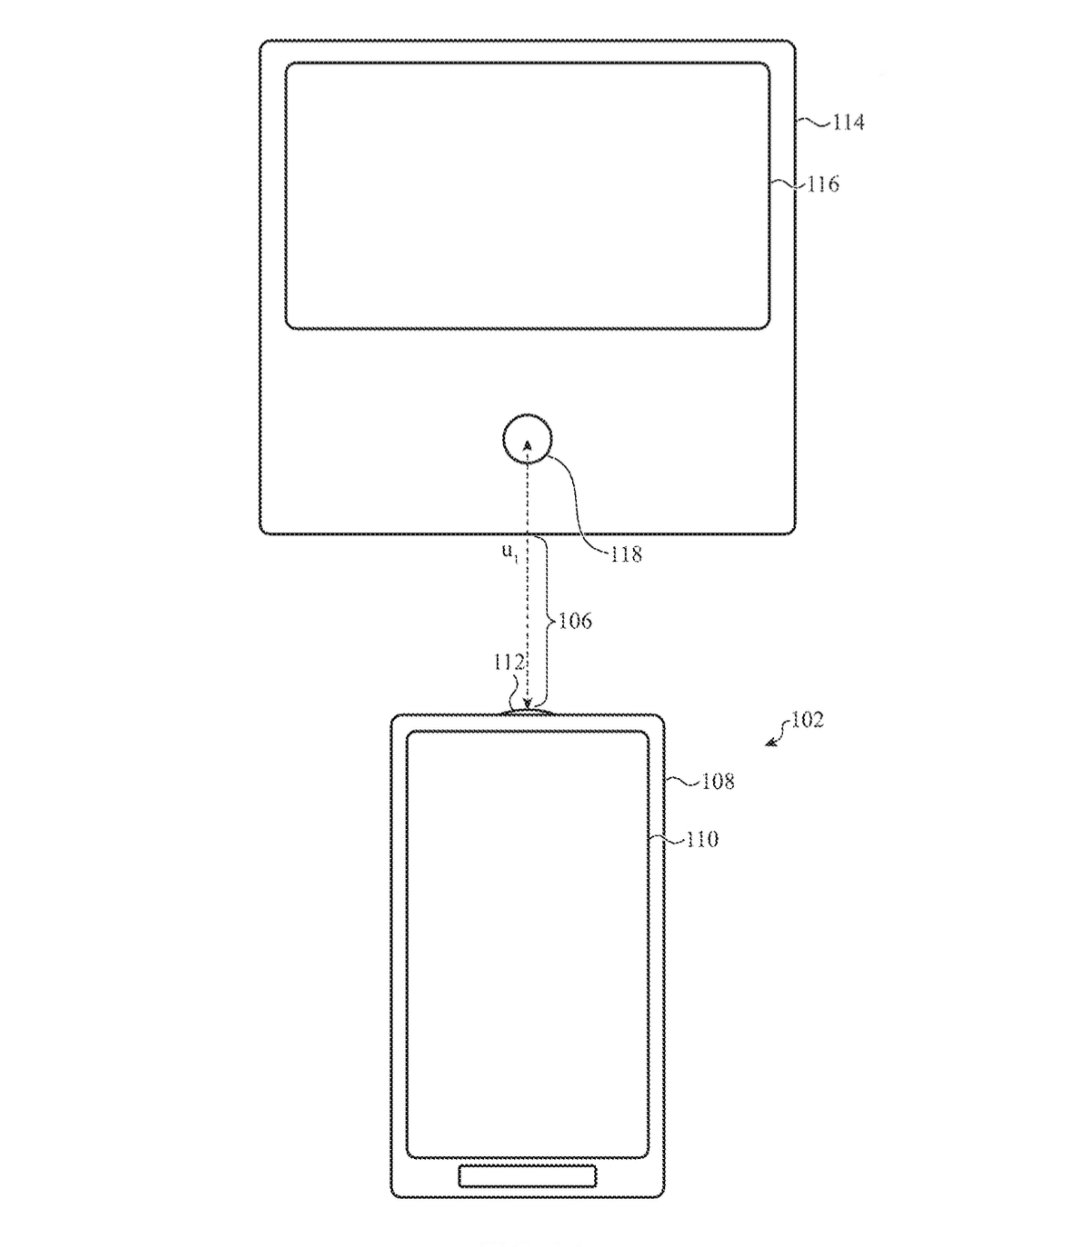 Фрагмент патента, показывающий, как iPhone управляет другим устройством.